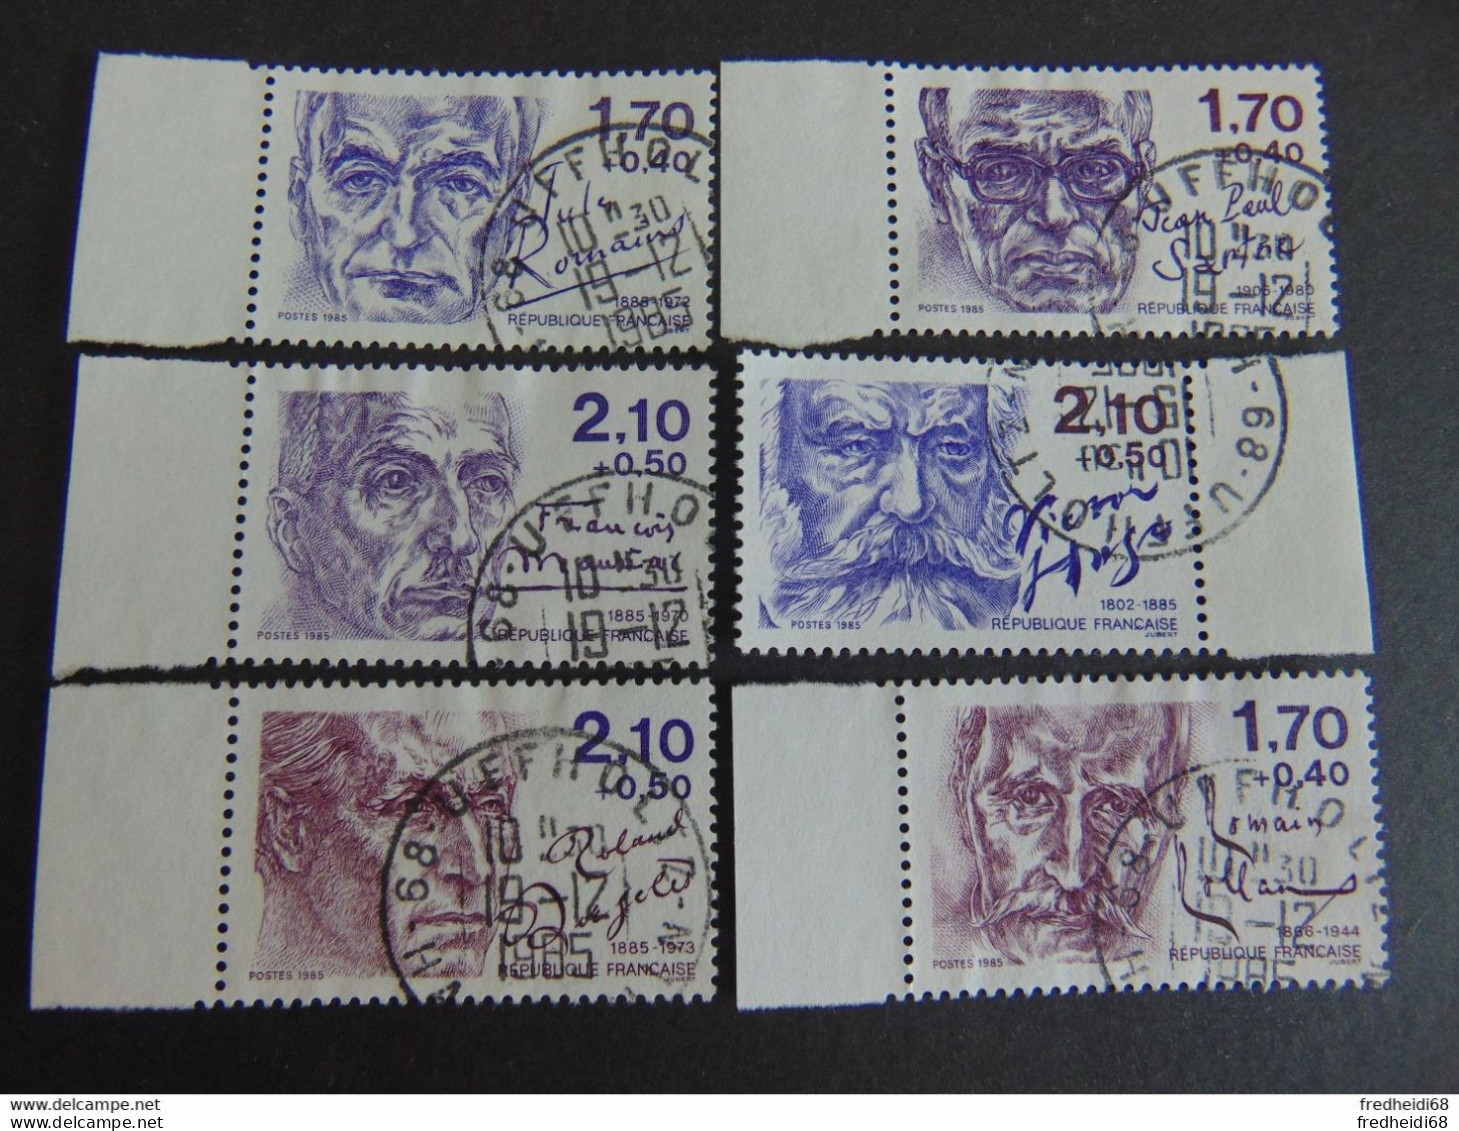 Magnifique Série Des Personnages Célèbres De 1985 N°. 2355 à 2360 Oblitérés En Bord De Feuille Ayant Réellement Circulé - Used Stamps